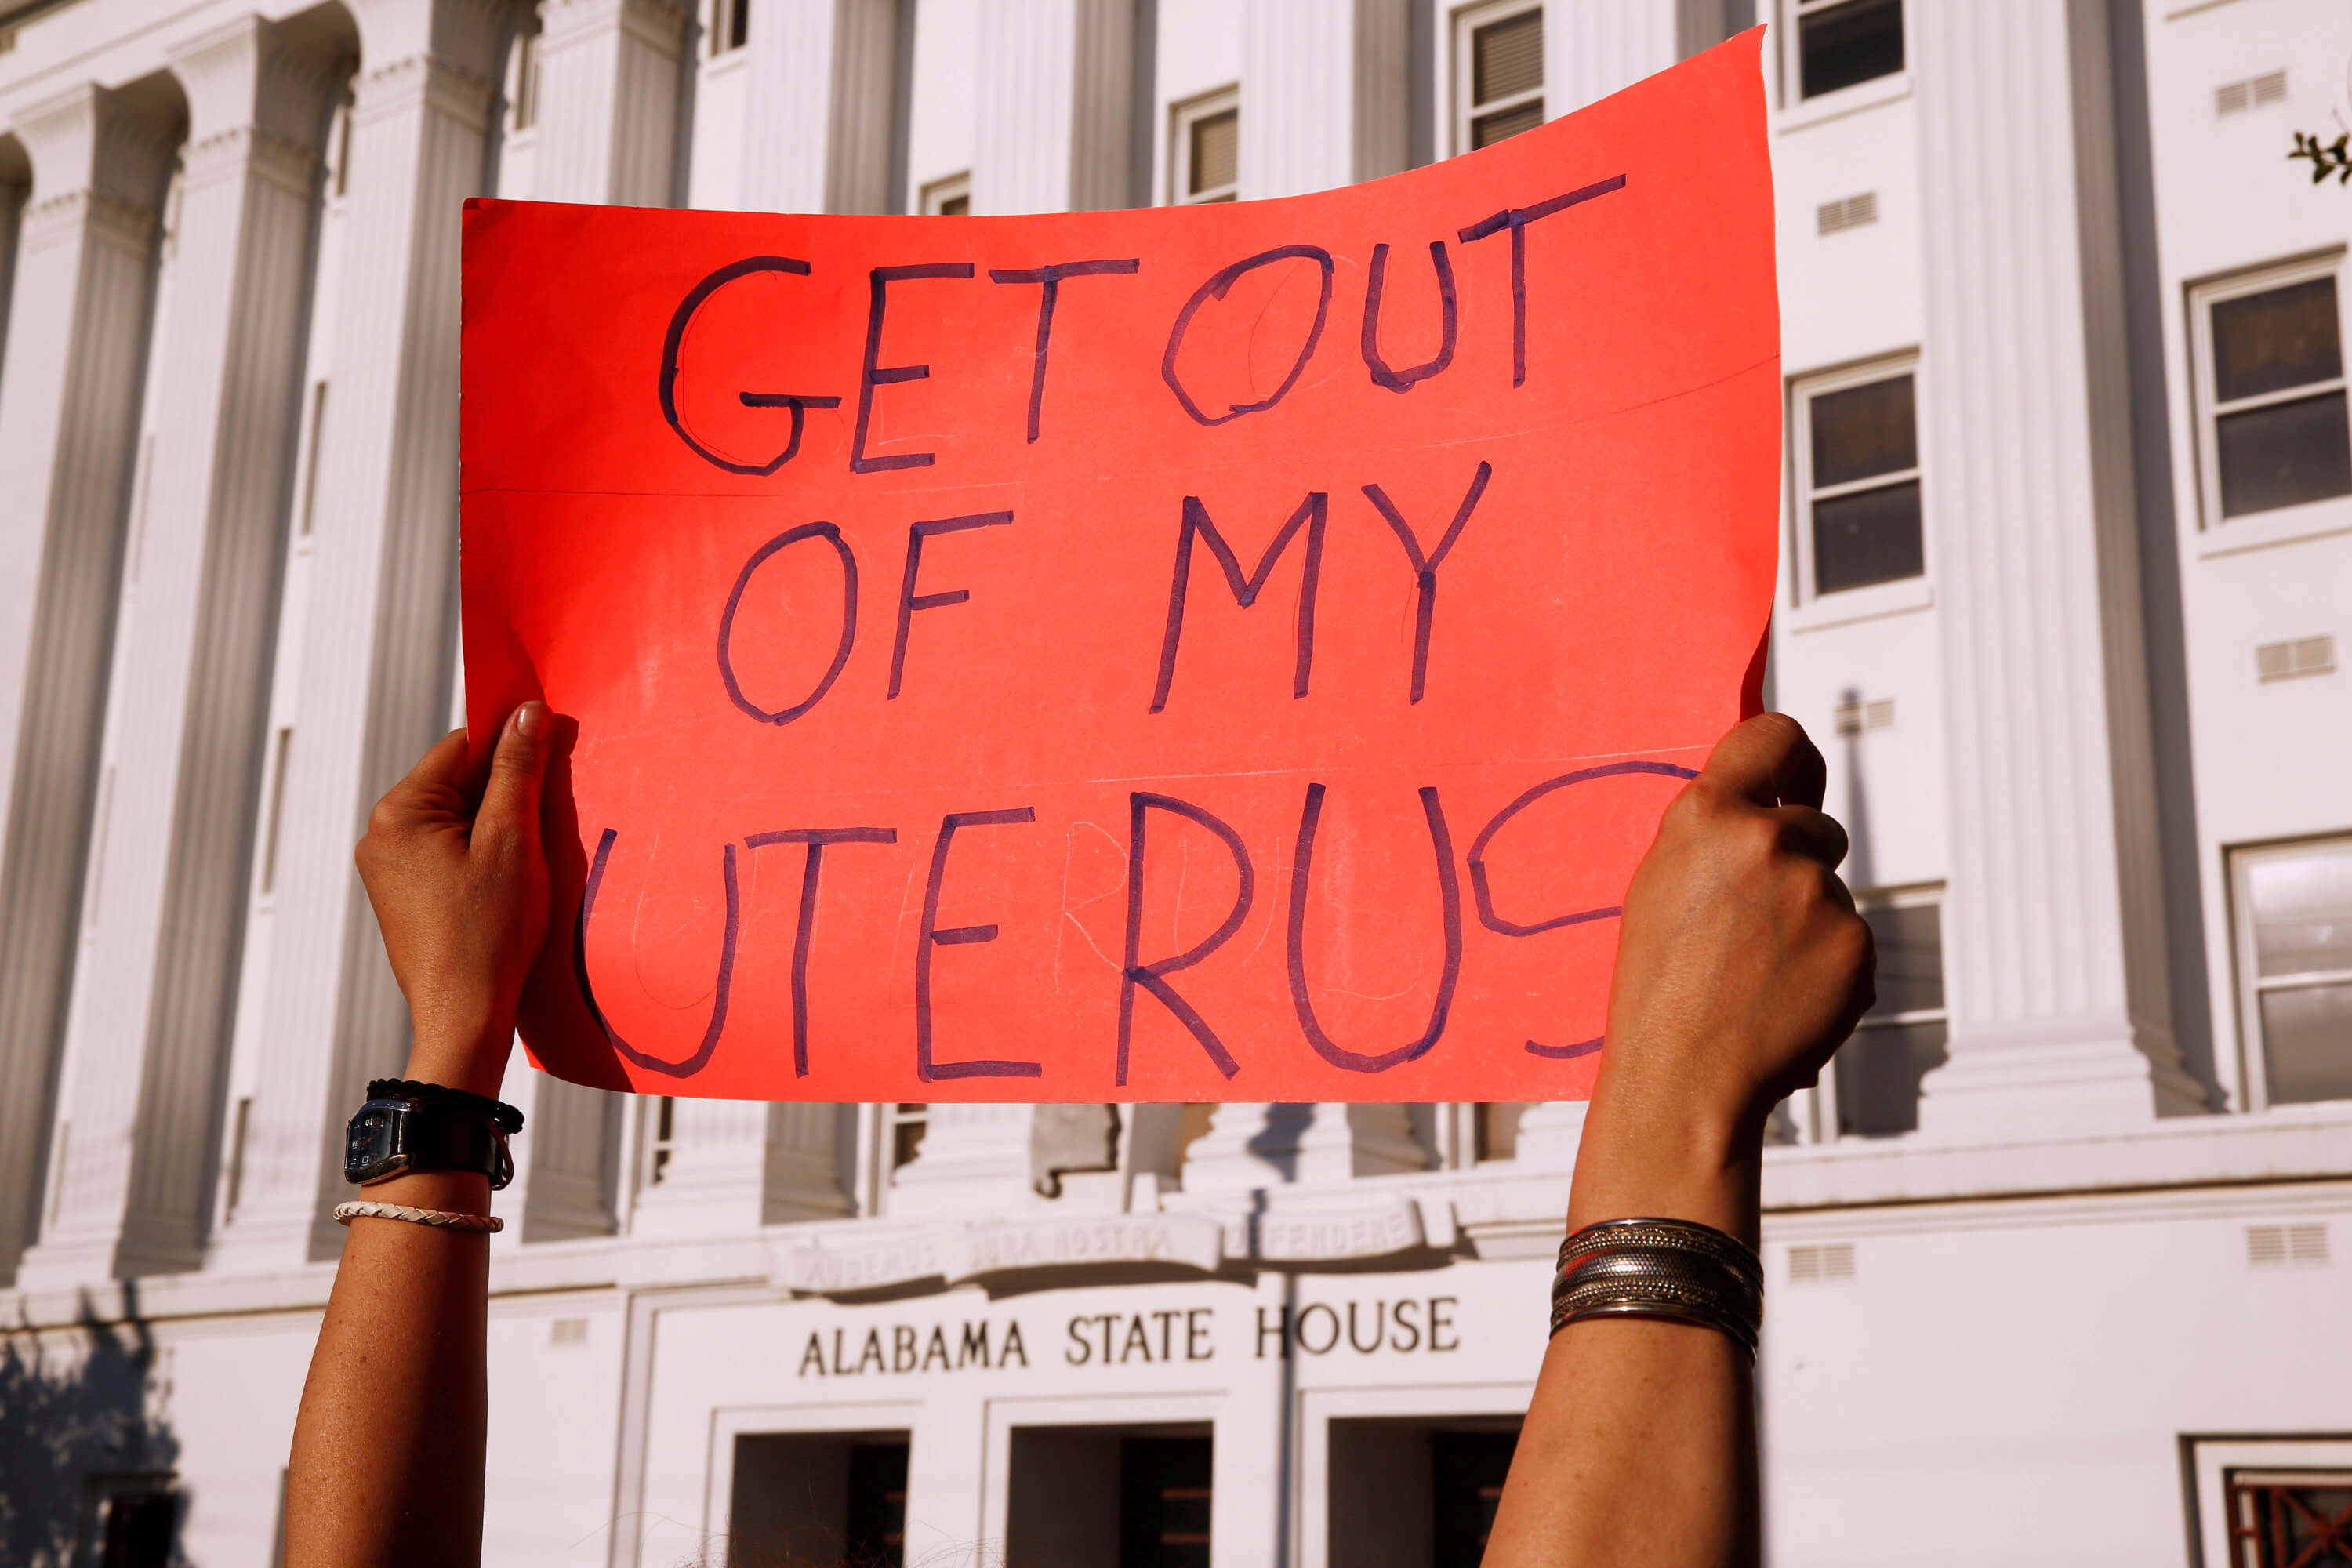 ΗΠΑ: Προάγγελος περιορισμών στις αμβλώσεις σε όλη τη χώρα η απόφαση της Οκλαχόμα;